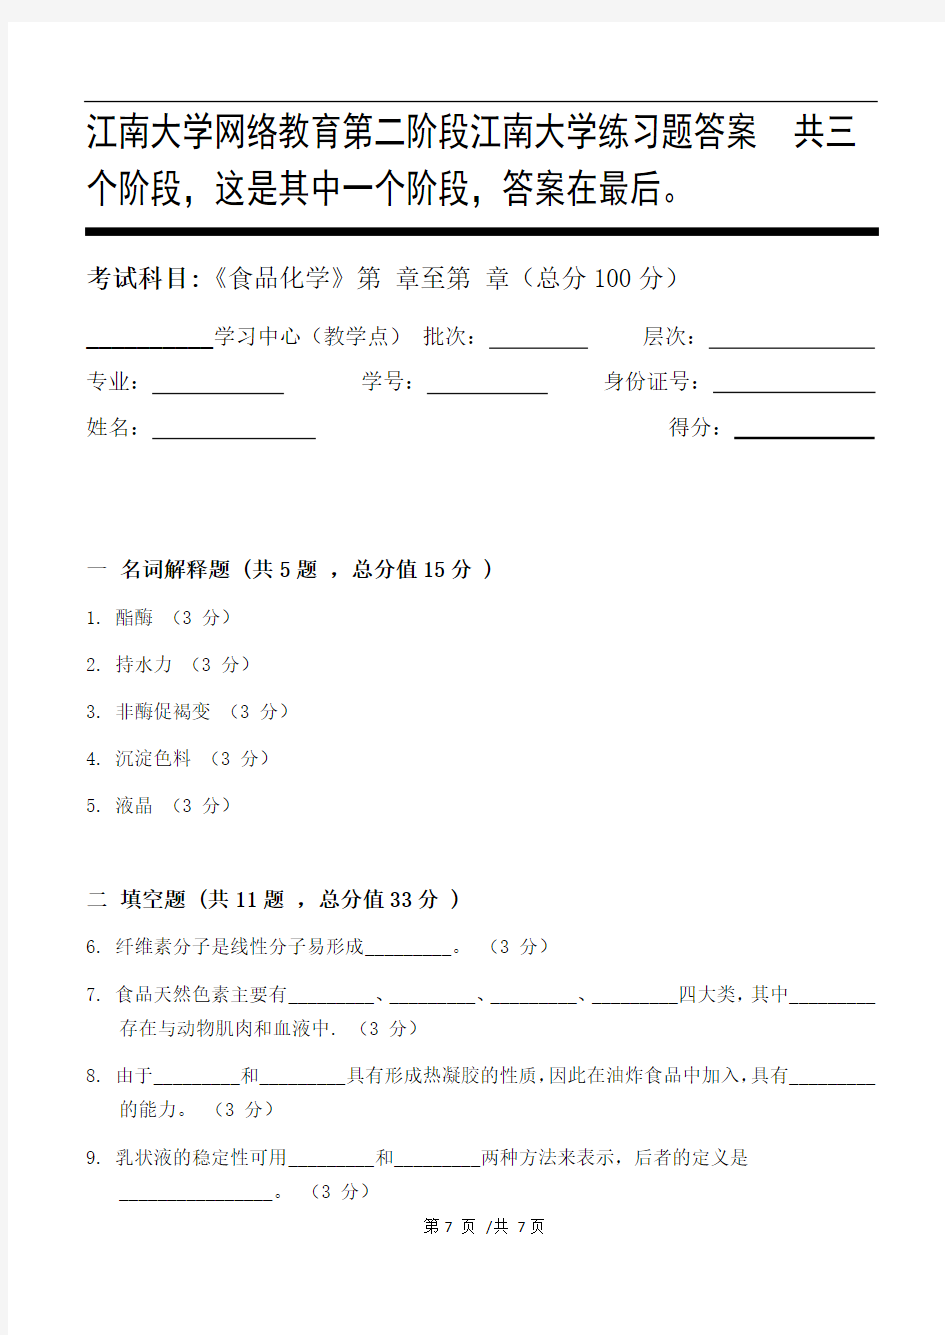 食品化学第2阶段江南大学练习题答案  共三个阶段,这是其中一个阶段,答案在最后。